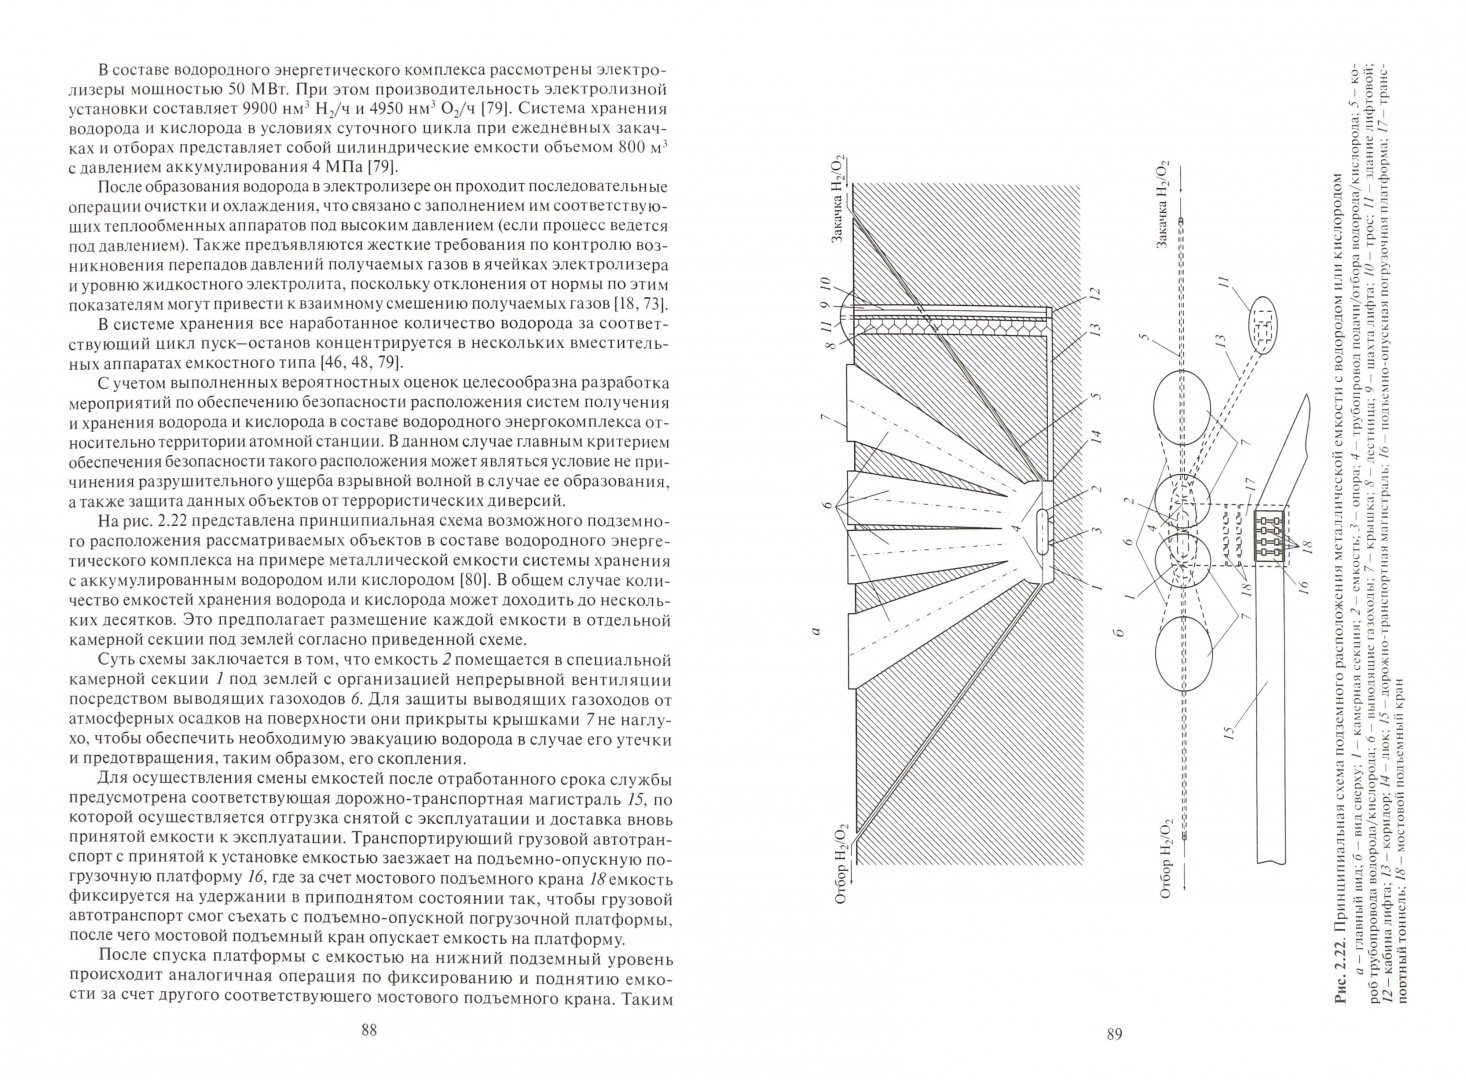 Иллюстрация 1 из 13 для Комбинирование водородных энергетических циклов с атомными электростанциями - Аминов, Байрамов | Лабиринт - книги. Источник: Лабиринт